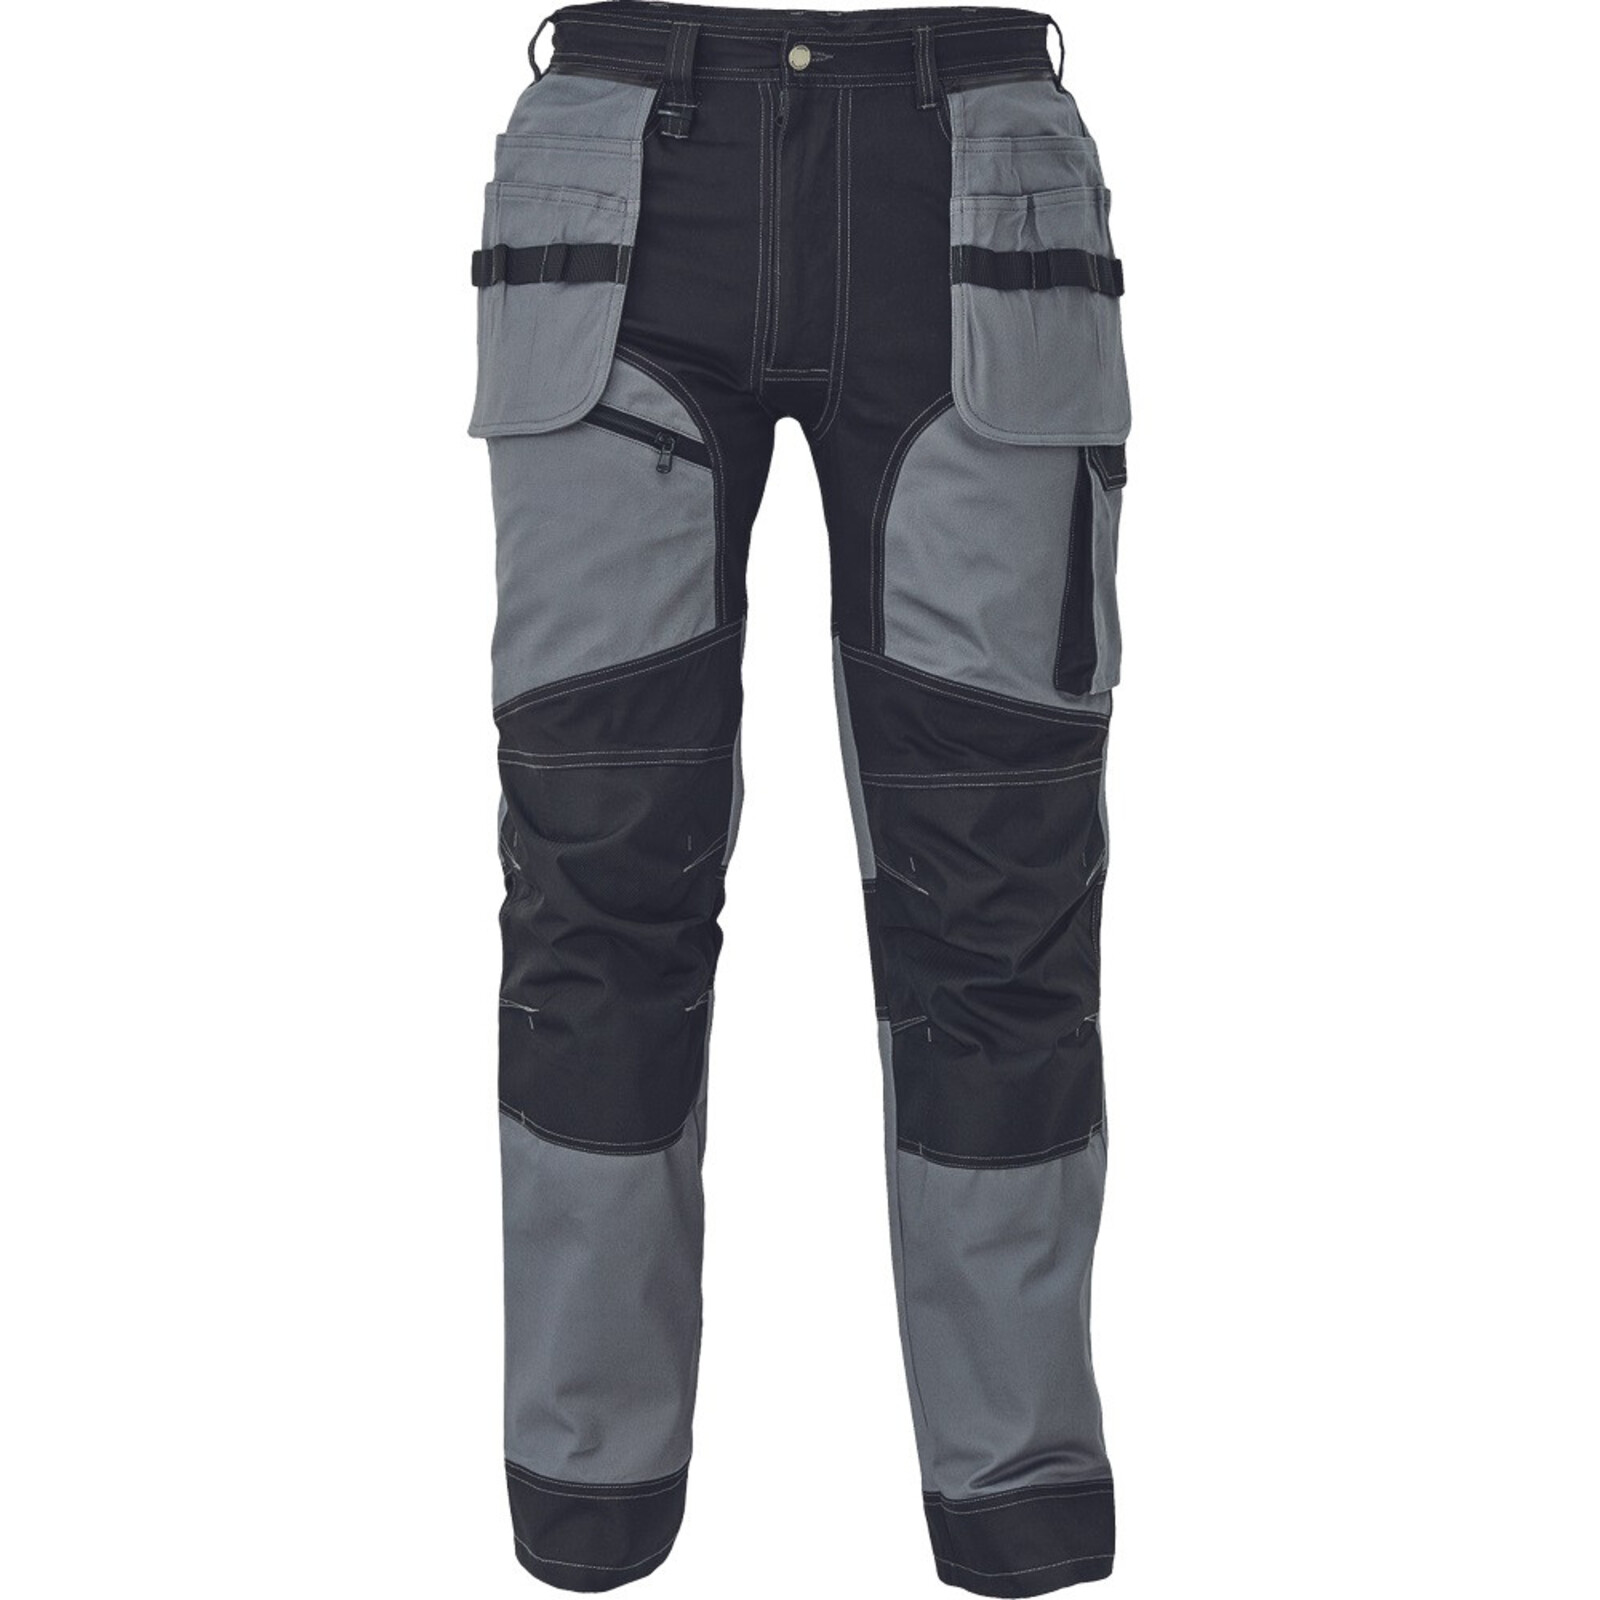 Strečové pracovné nohavice Cerva Keilor - veľkosť: 50, farba: sivá/čierna